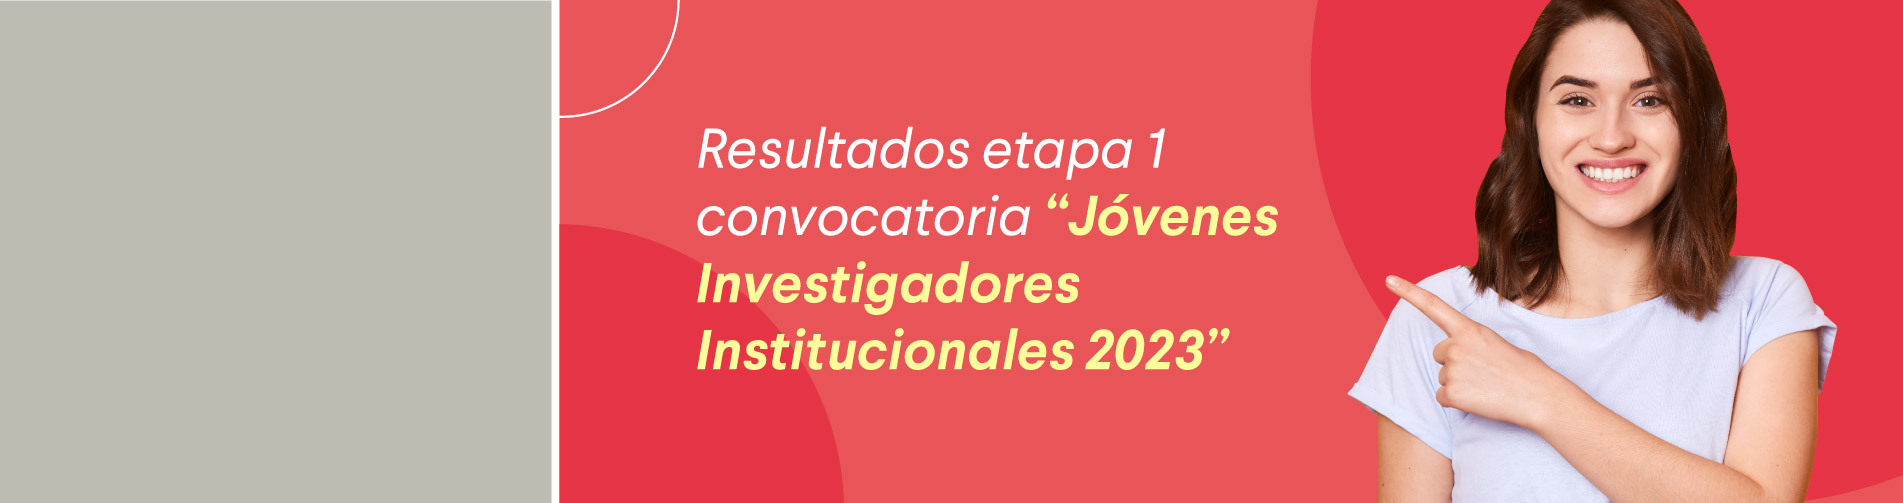 Resultados etapa 1 convocatoria “Jóvenes Investigadores Institucionales 2023”